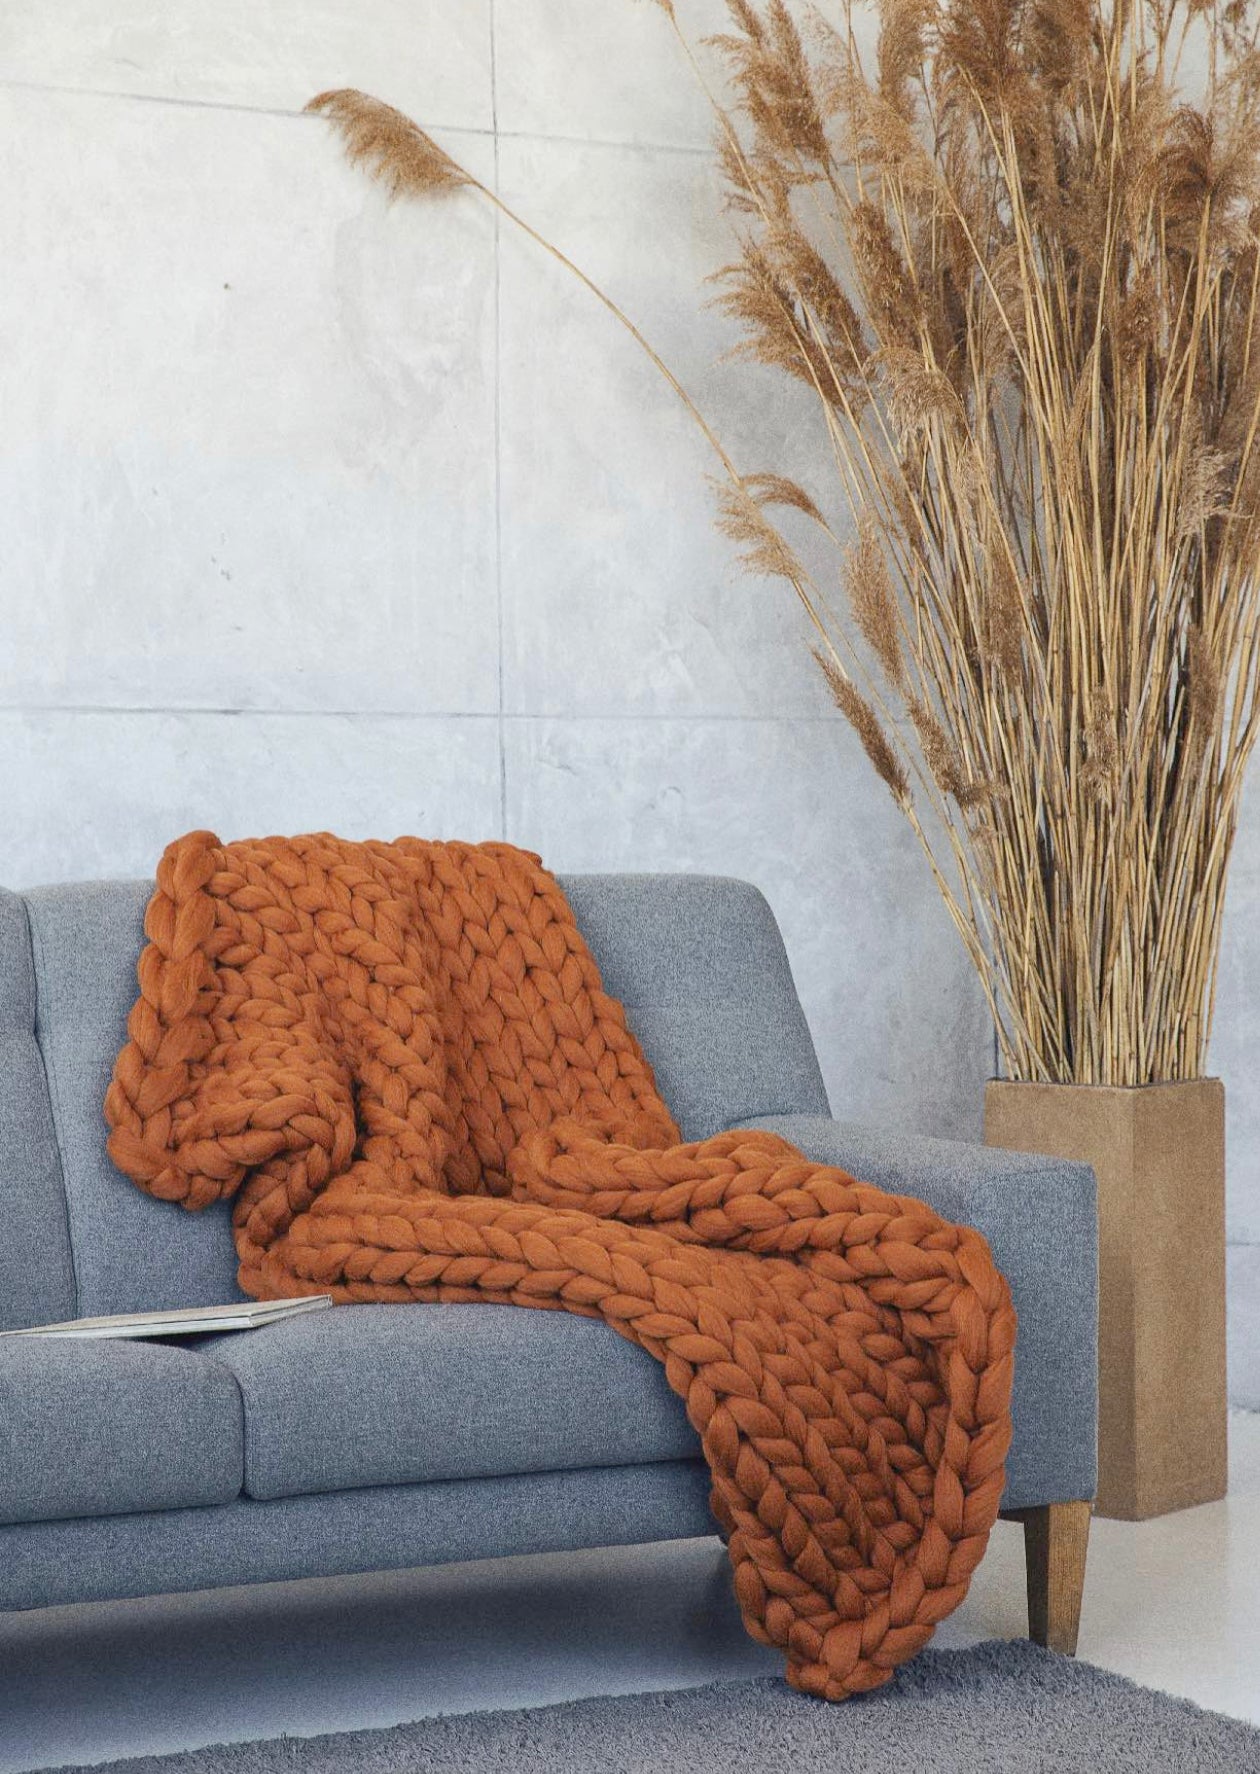 Chunky knit blankets: le maxi coperte a maglia in lana grossa - Ispirando